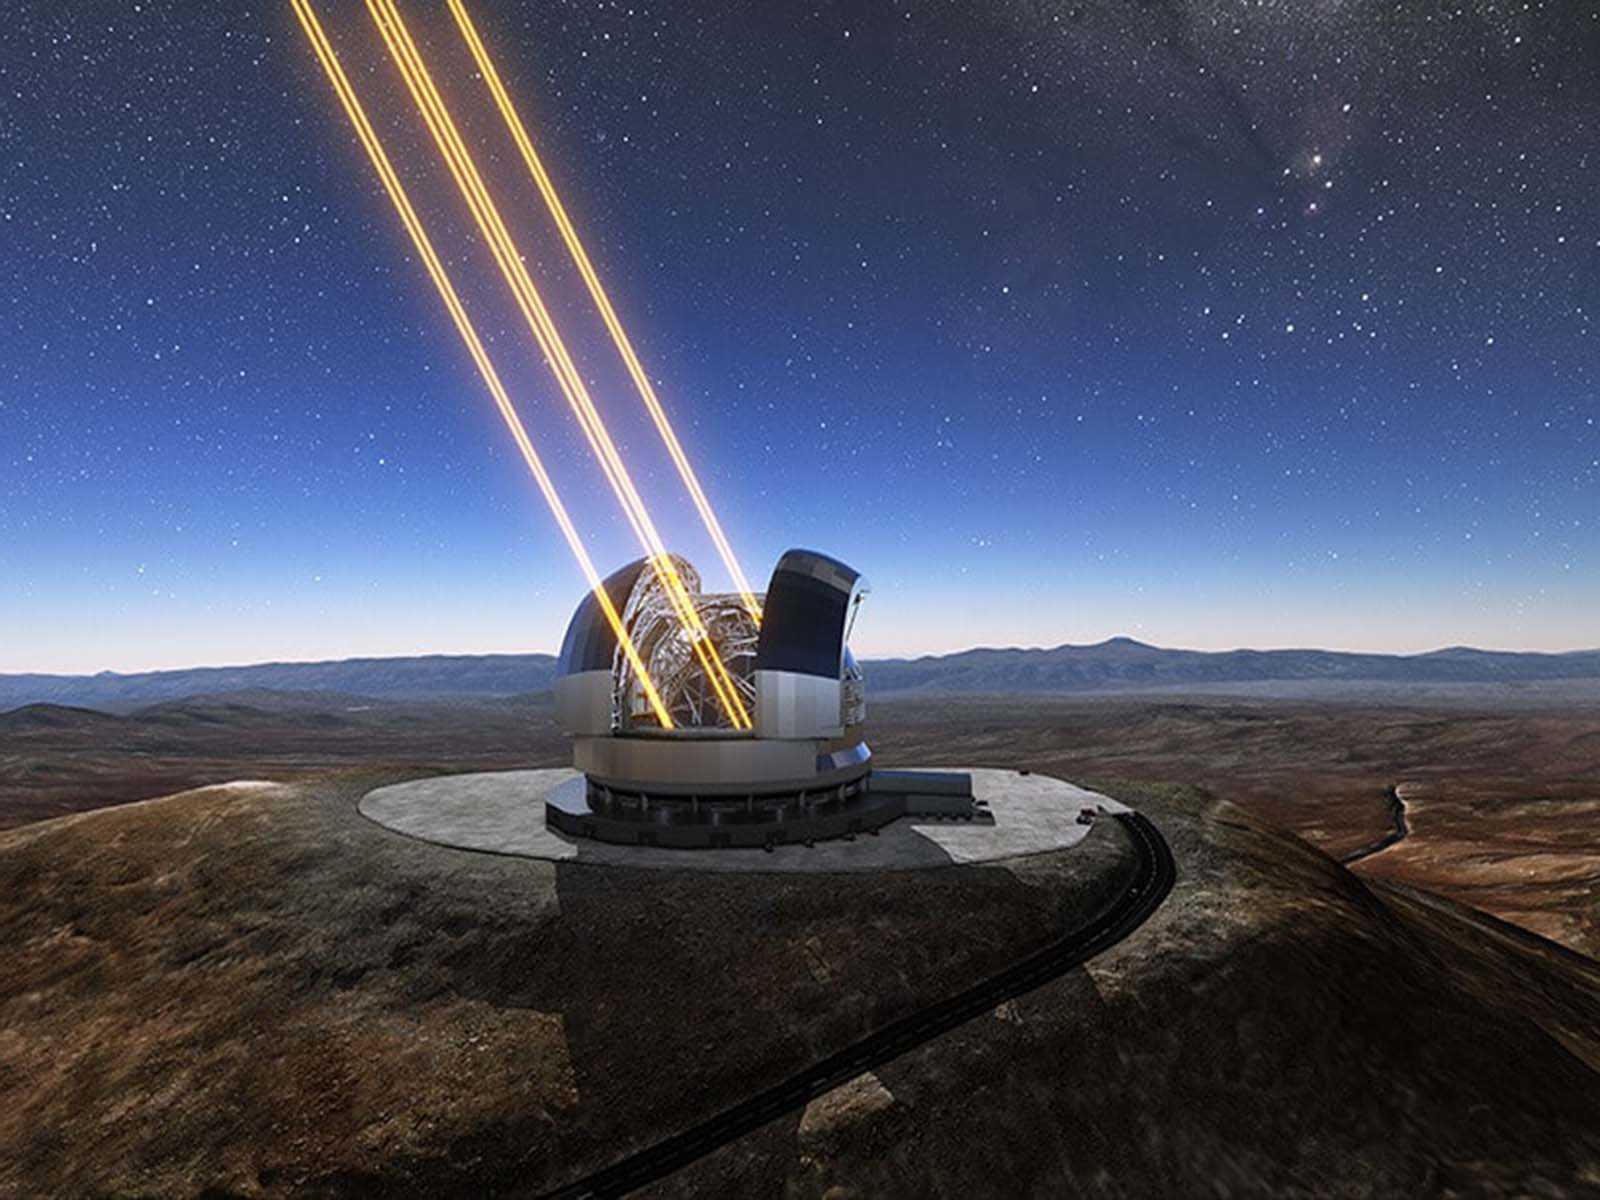 «интерстеллар» все ближе: зачем рекордно большой телескоп запускают в космос - телеканал "наука"